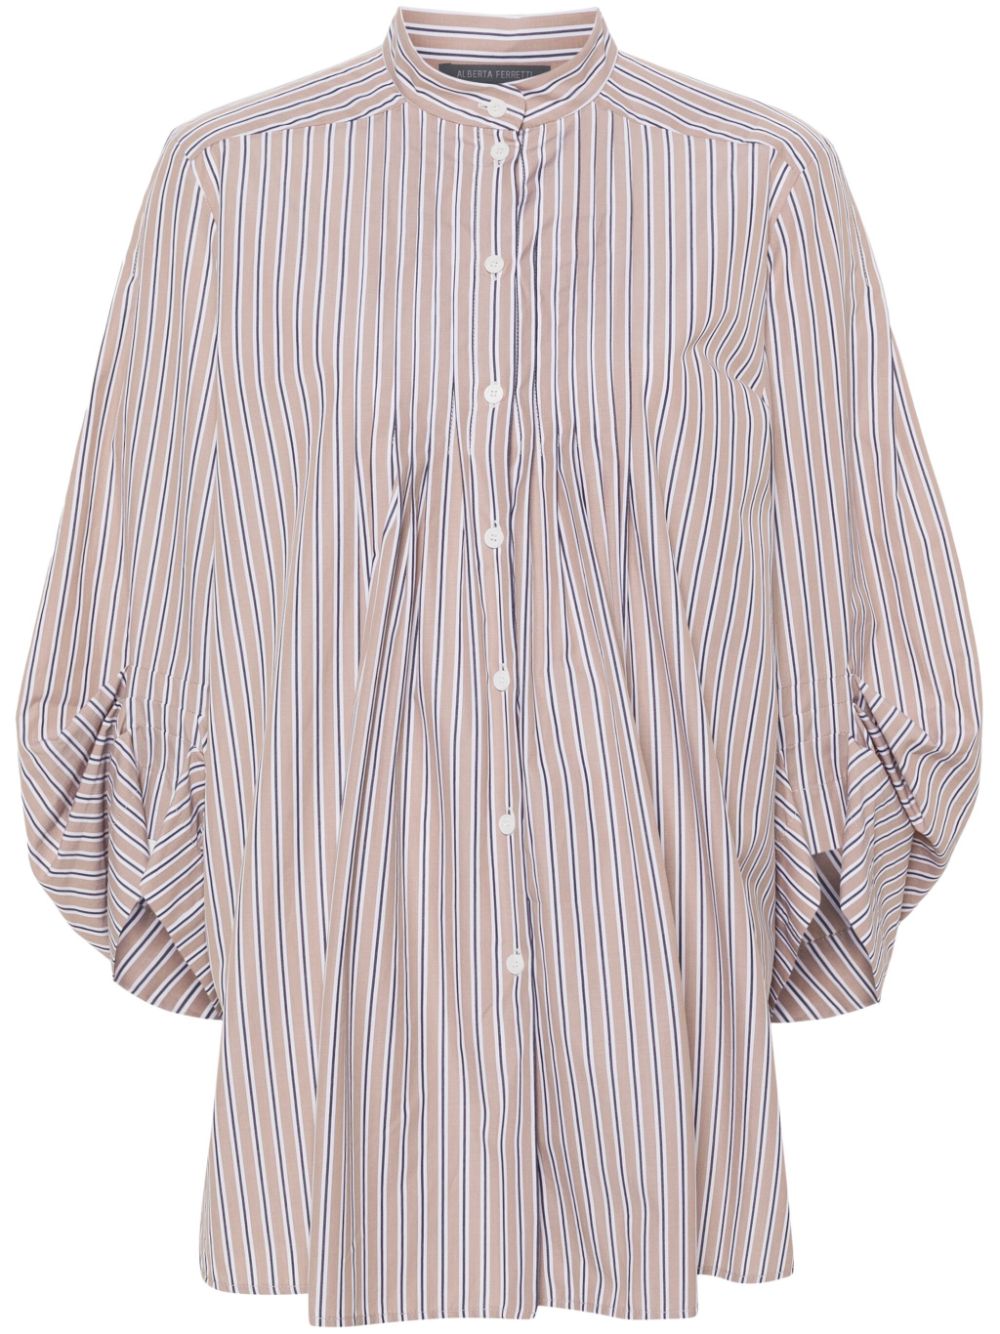 Image 1 of Alberta Ferretti striped cotton shirt